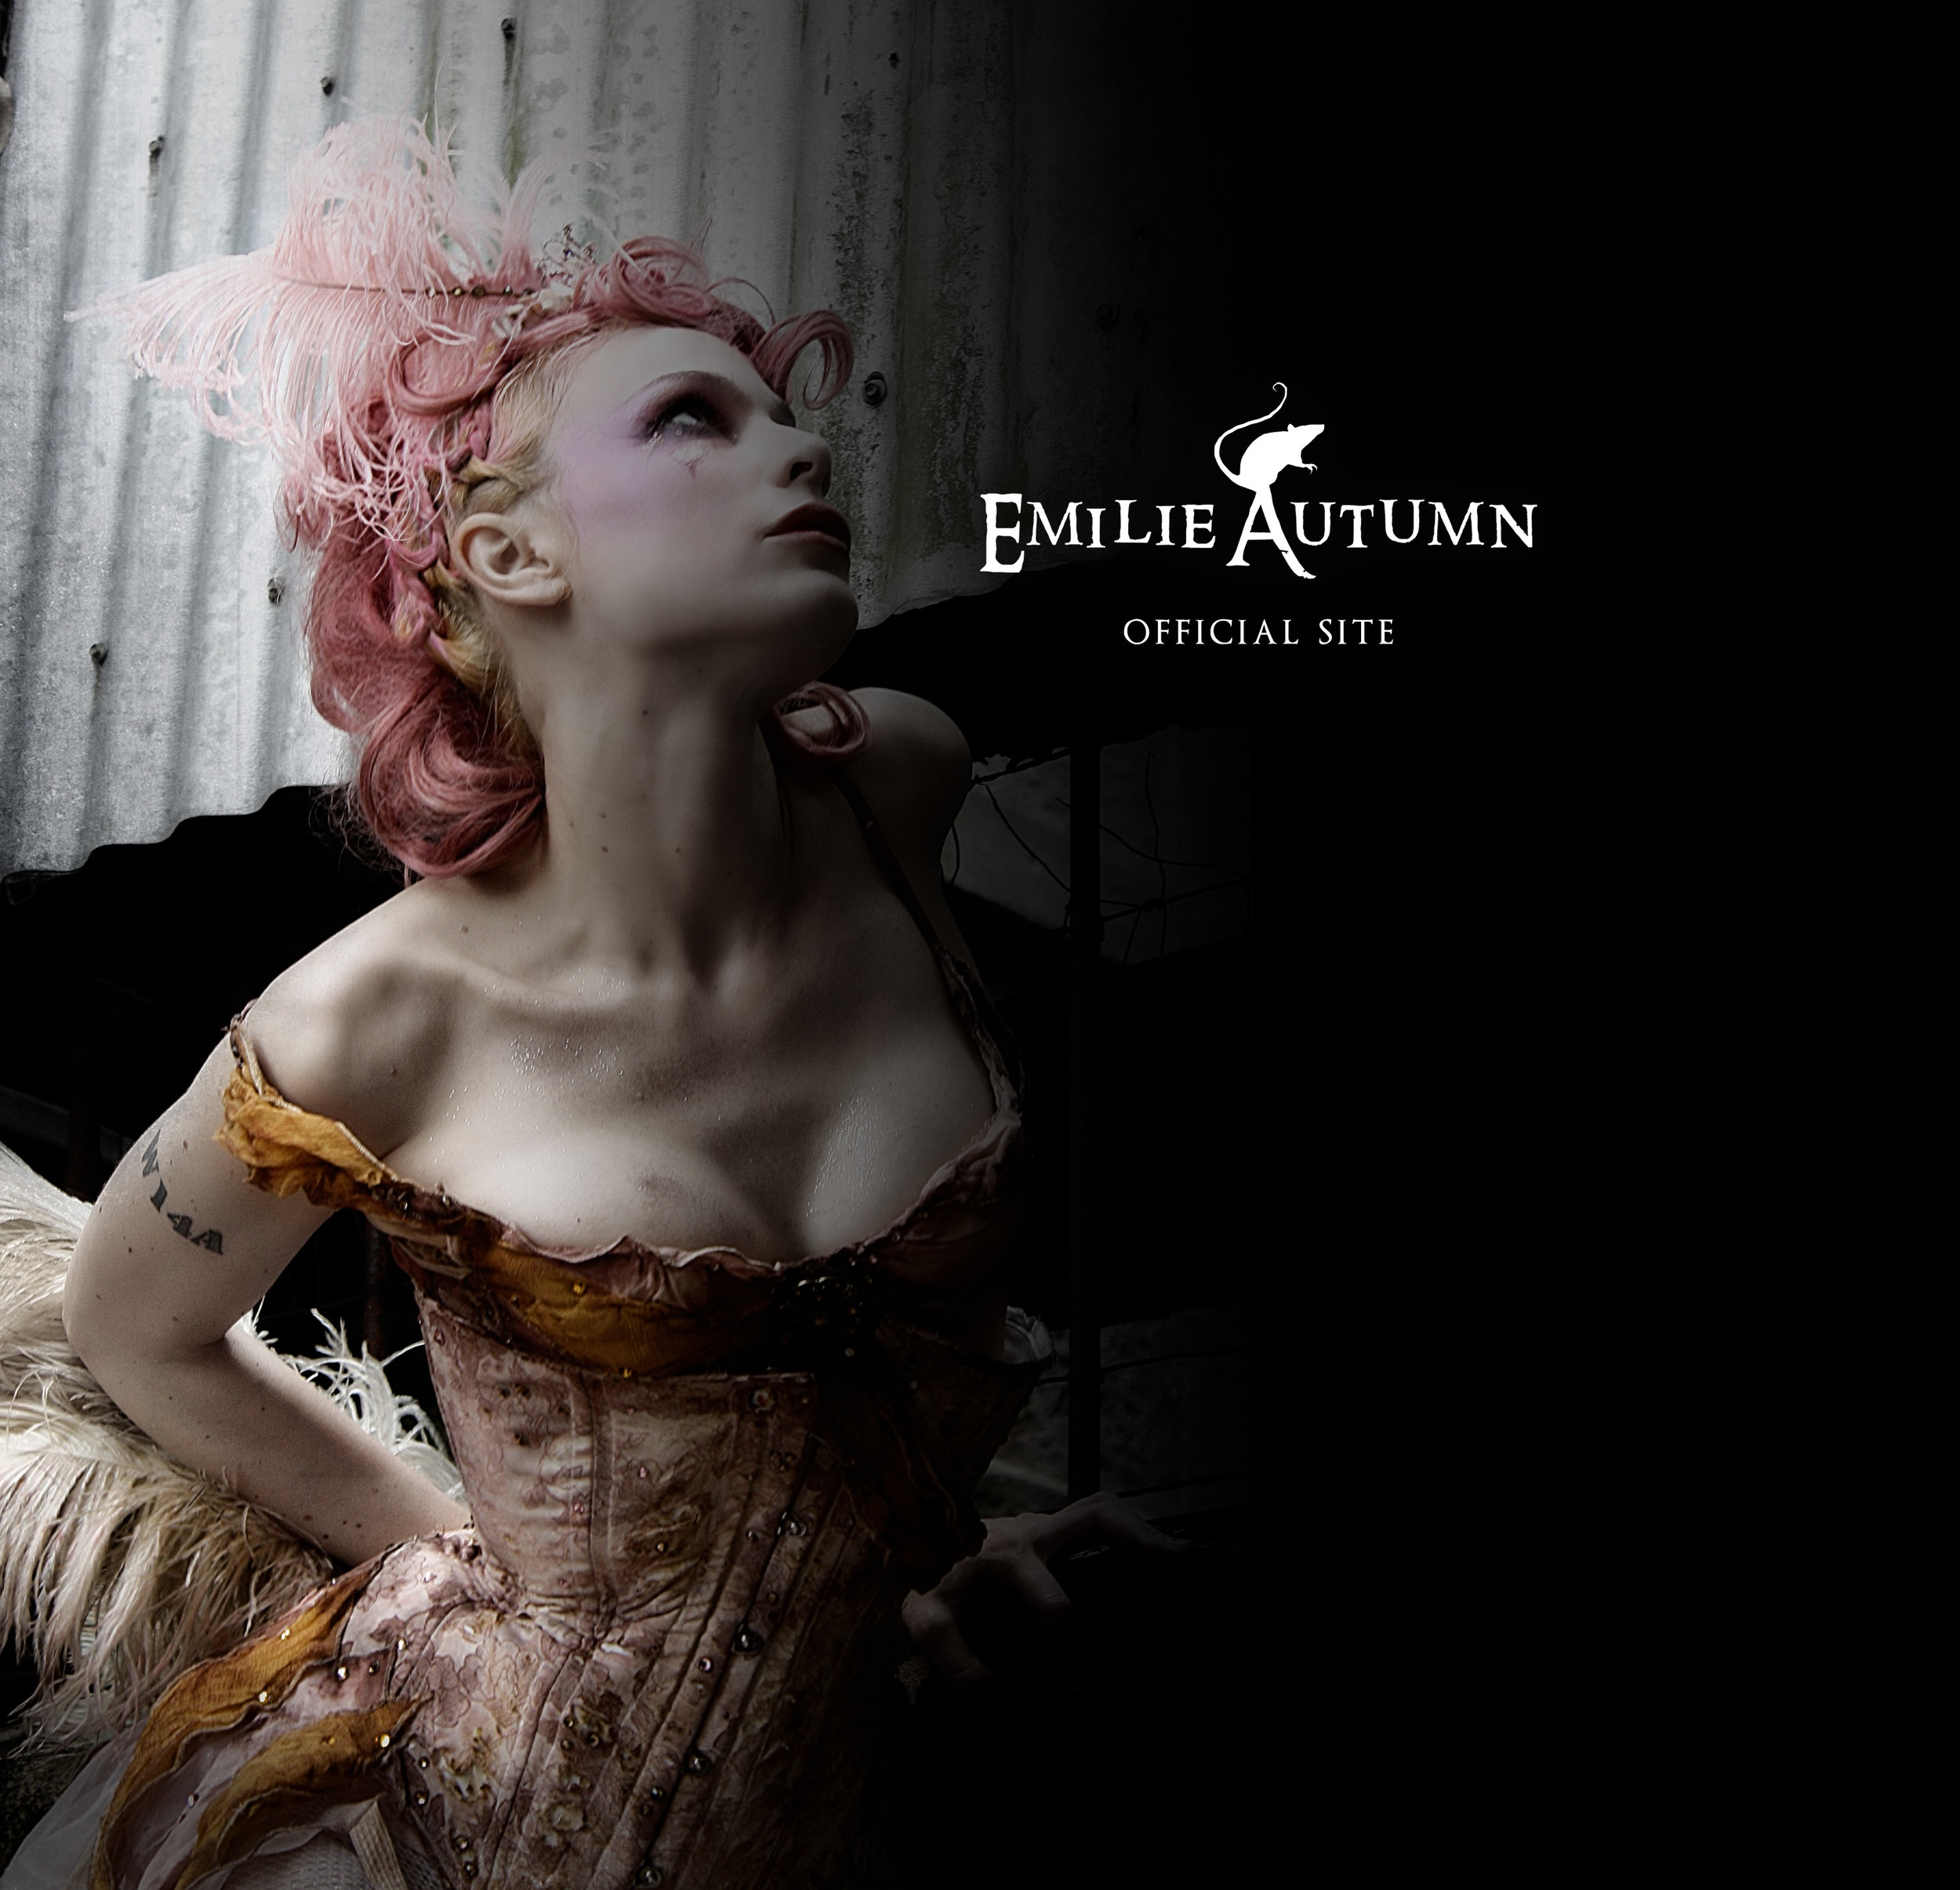 Emilie Autumn Official Site